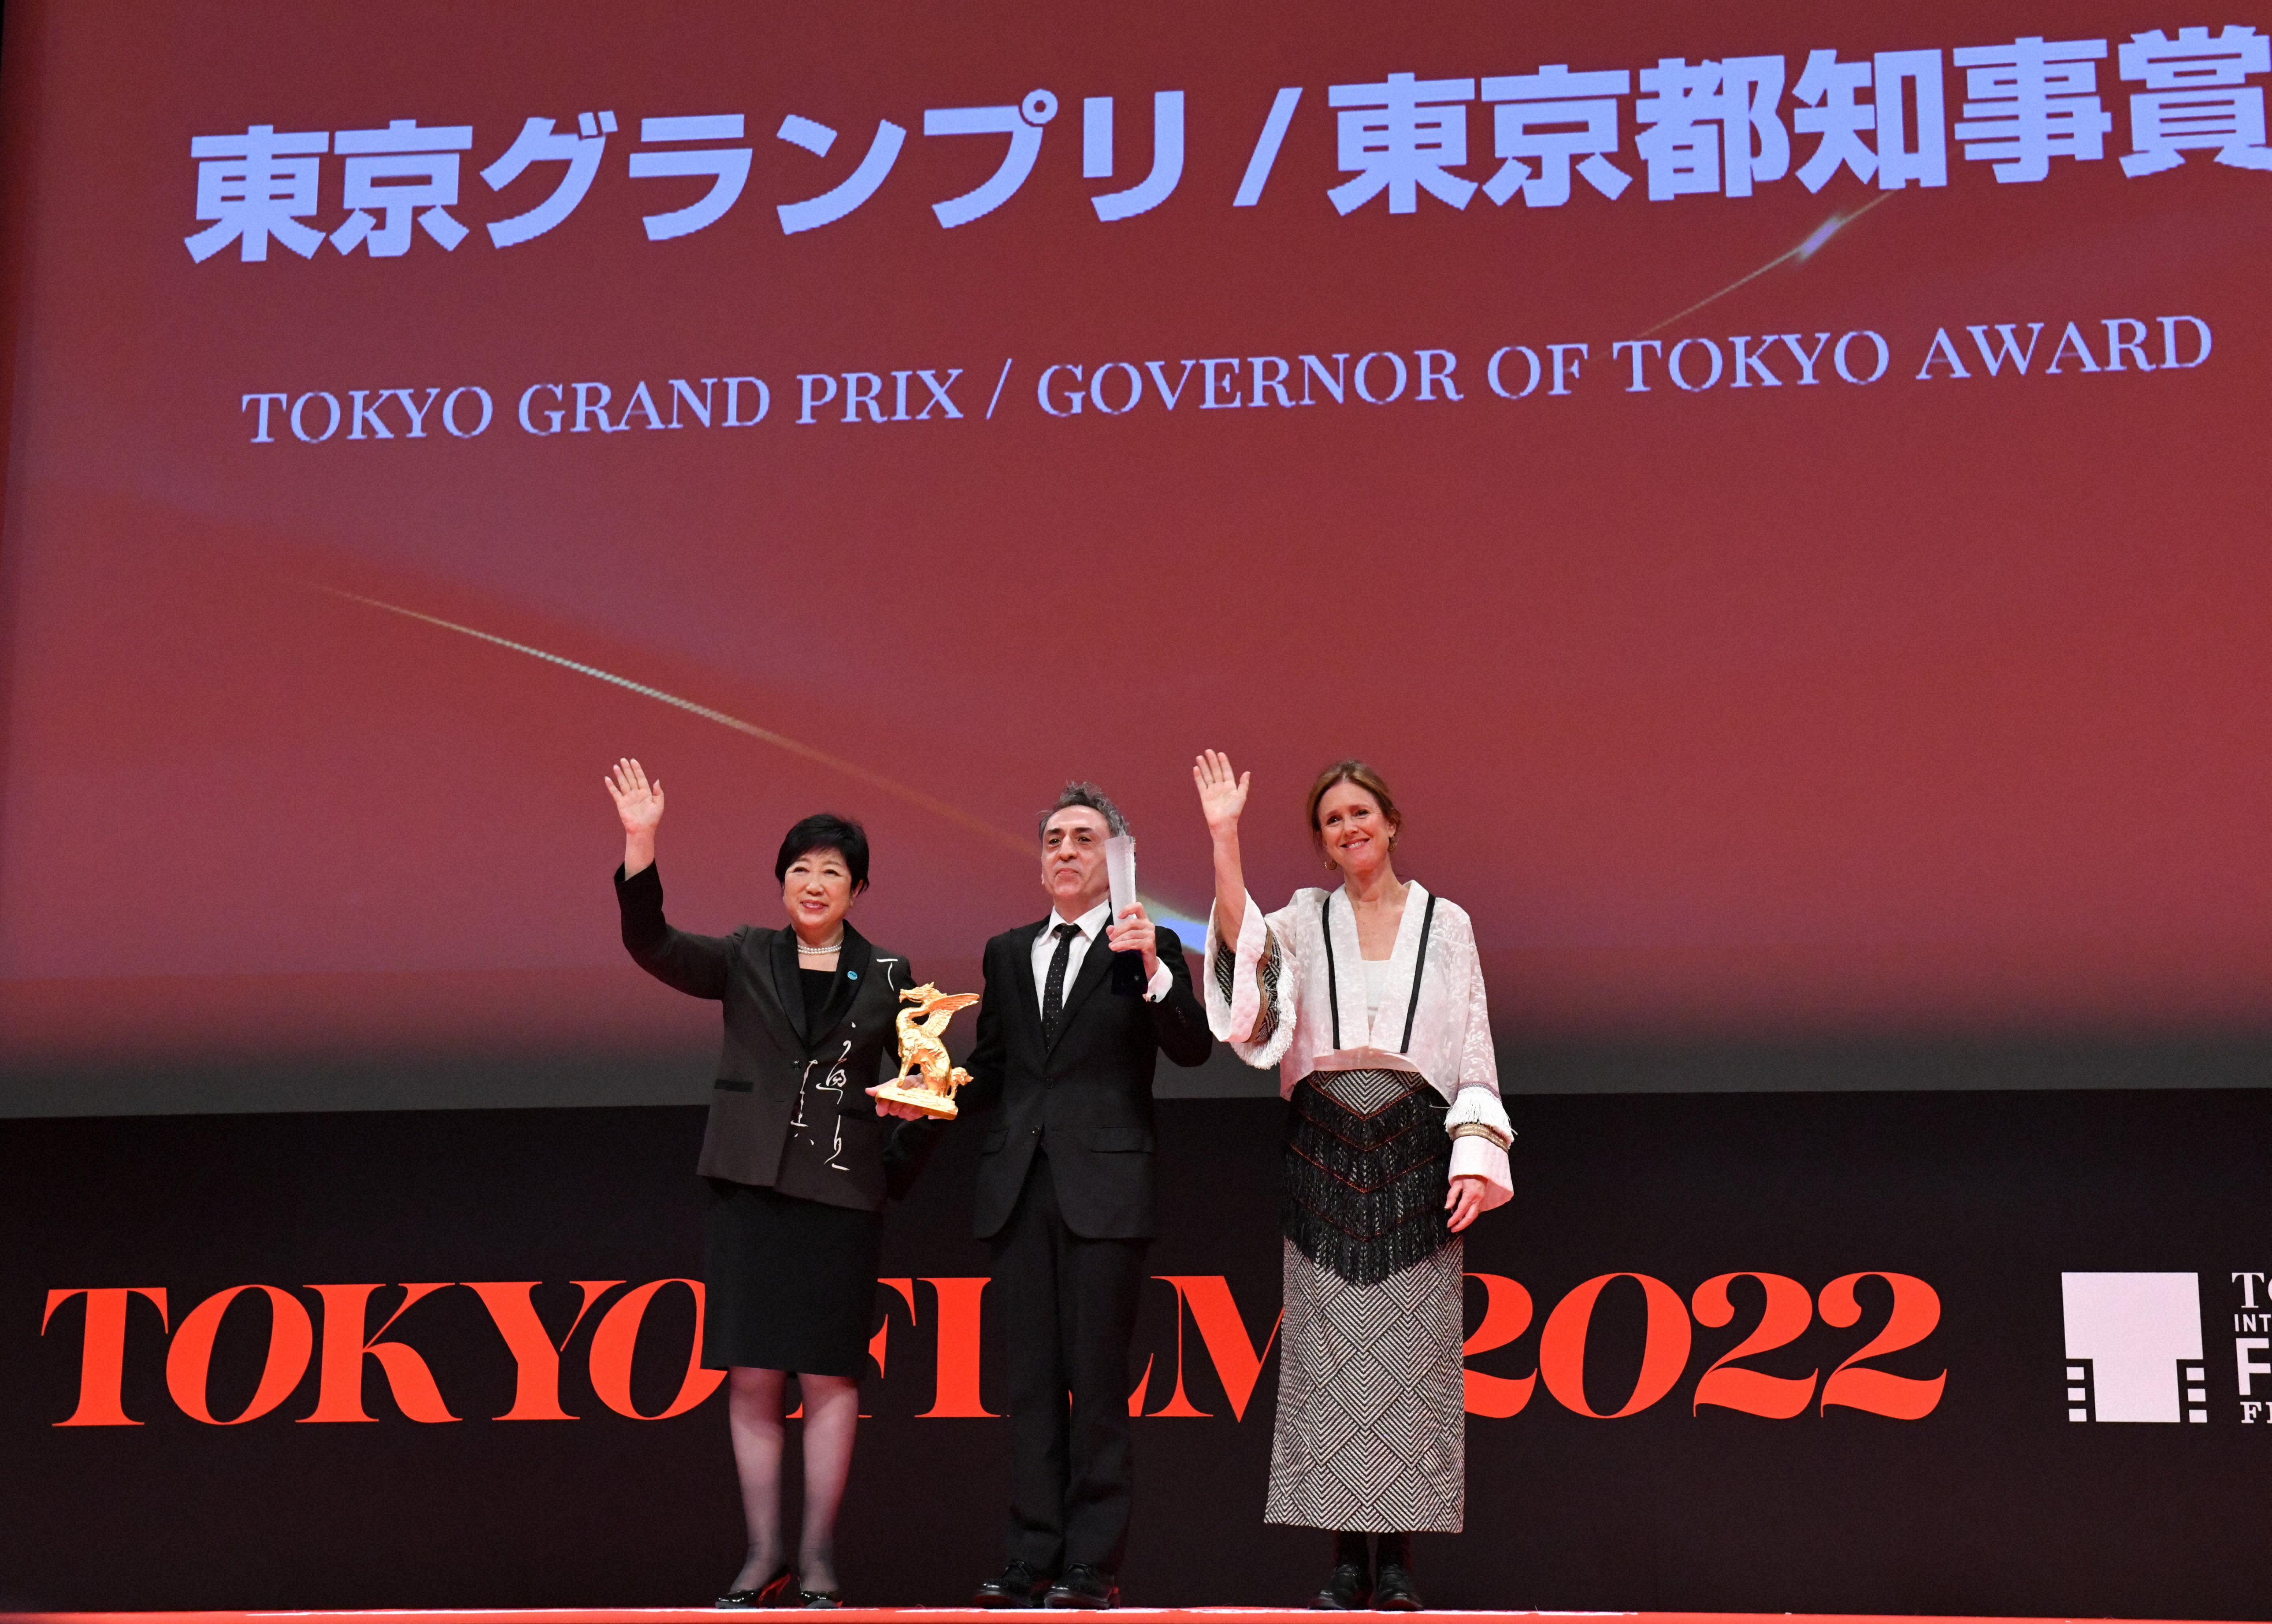 東京国際映画祭で東京グランプリに「ザ・ビースト」が選ばれ、代理でトロフィーを授与されたアルベルト・カレロ・ルゴ（中央）。左は小池百合子東京都知事、右は審査委員長のジュリー・テイモア＝宮間俊樹撮影